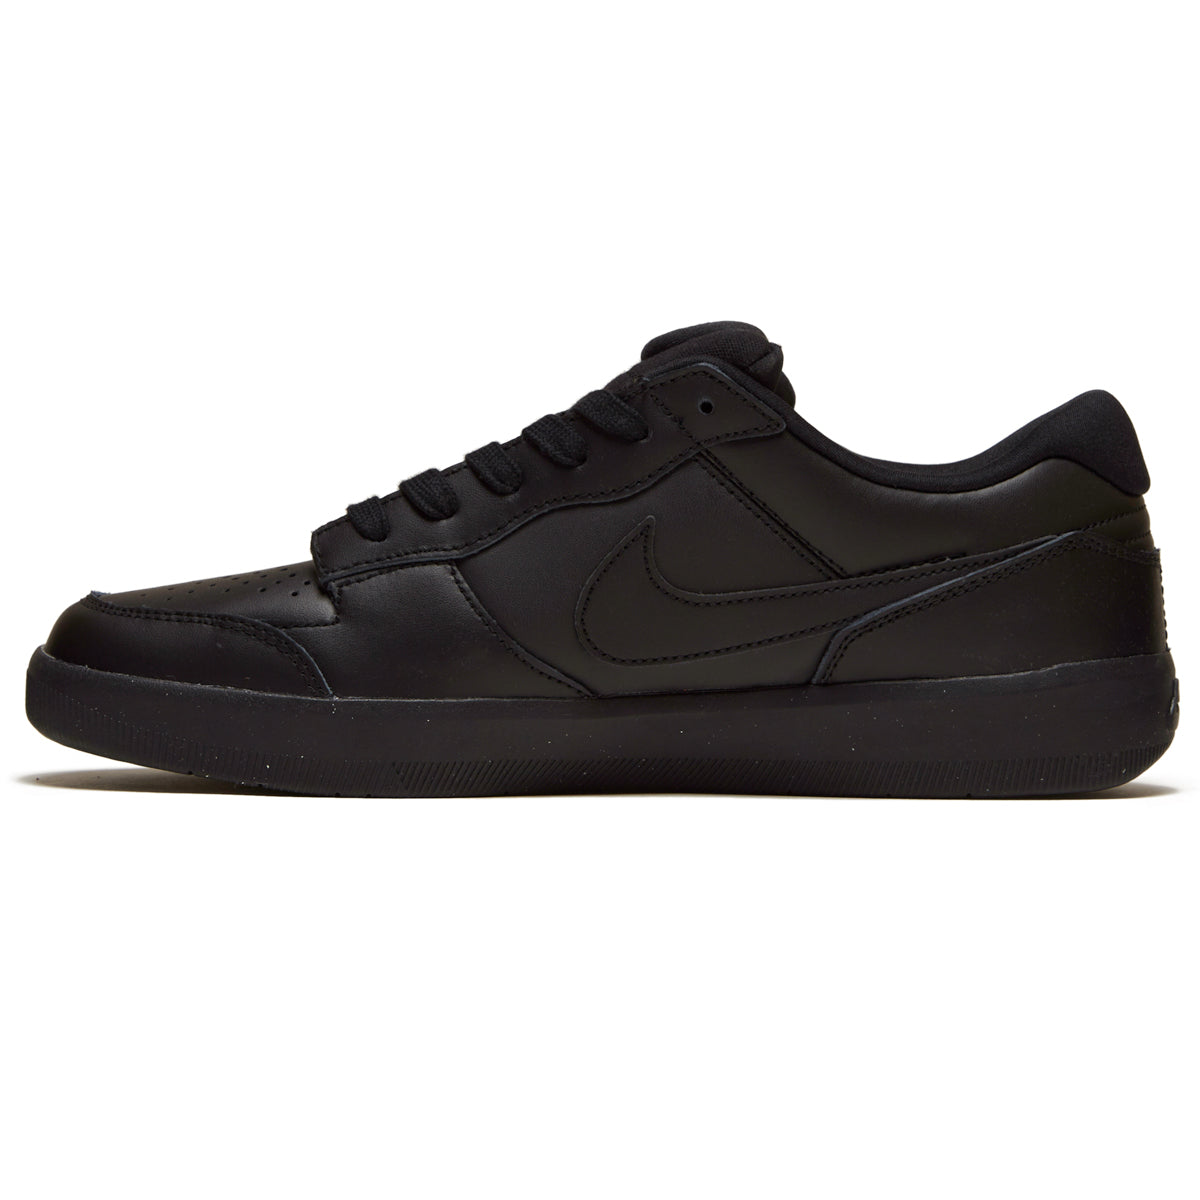 Nike SB 58 Premium Shoes - Black/Black/Black/Black CCS